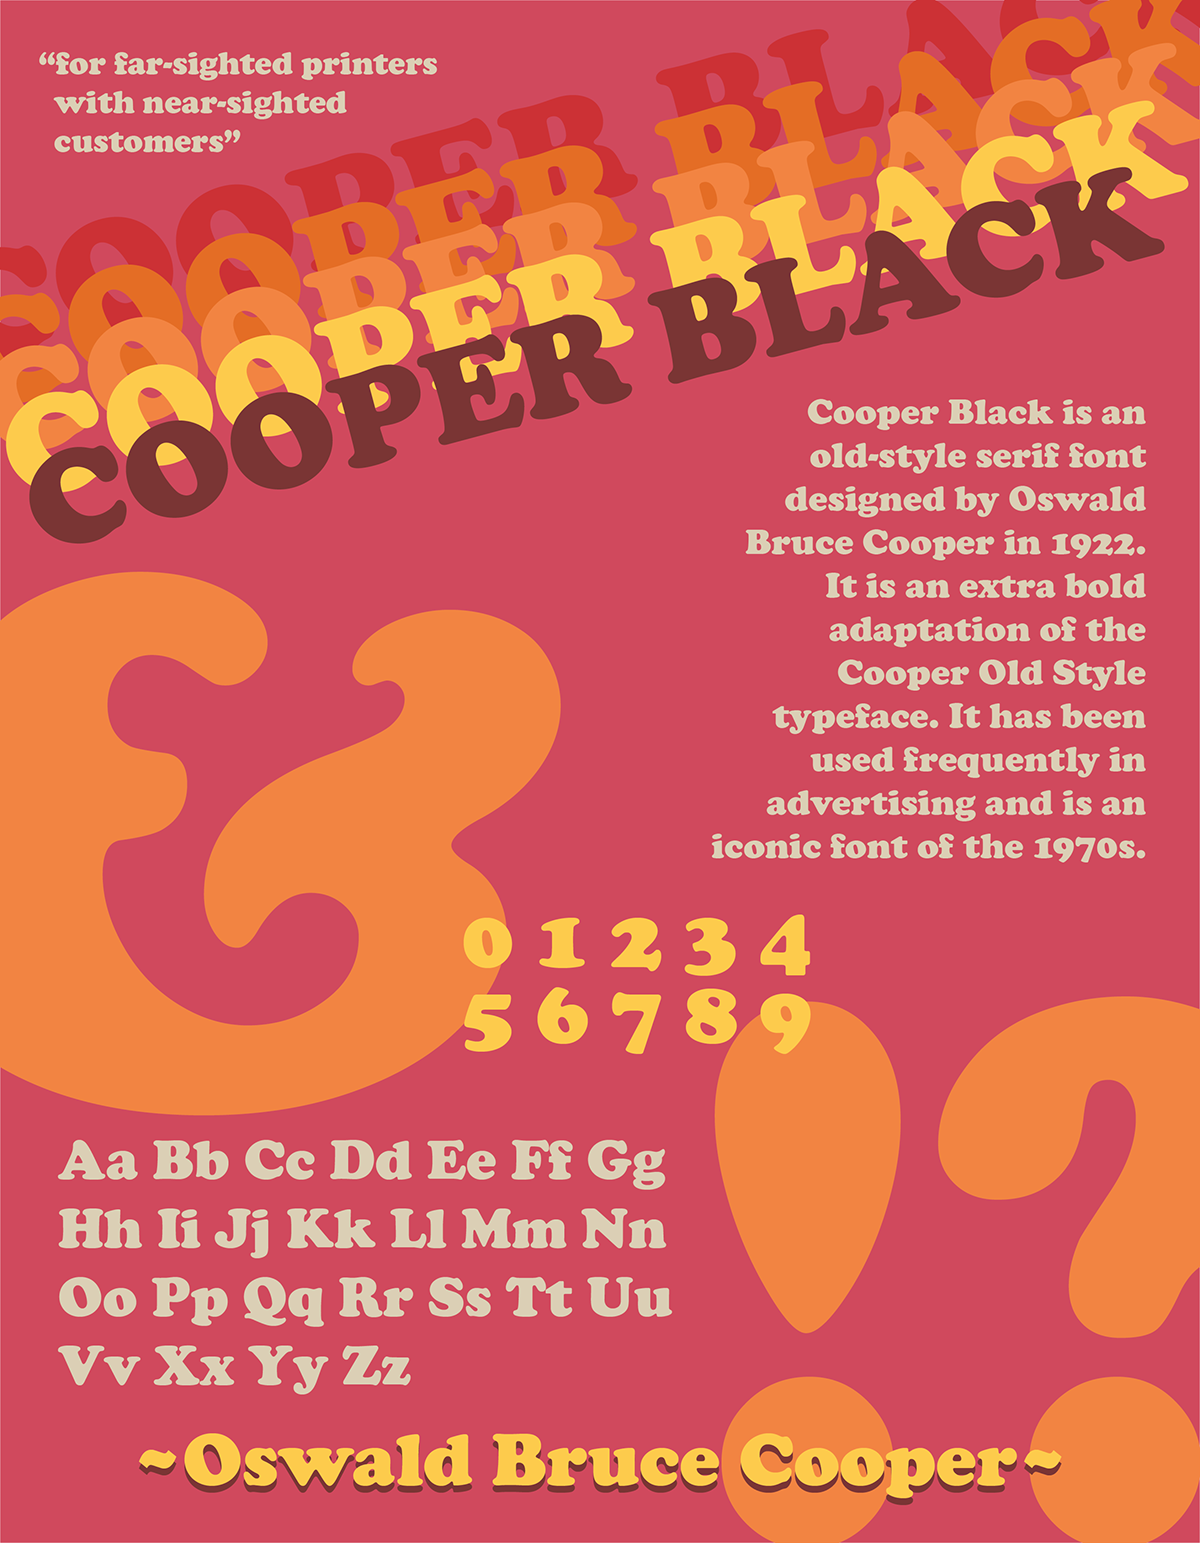 70s 70s font cooper black font Font Poster Illustrator poster Poster Design Retro Typeface